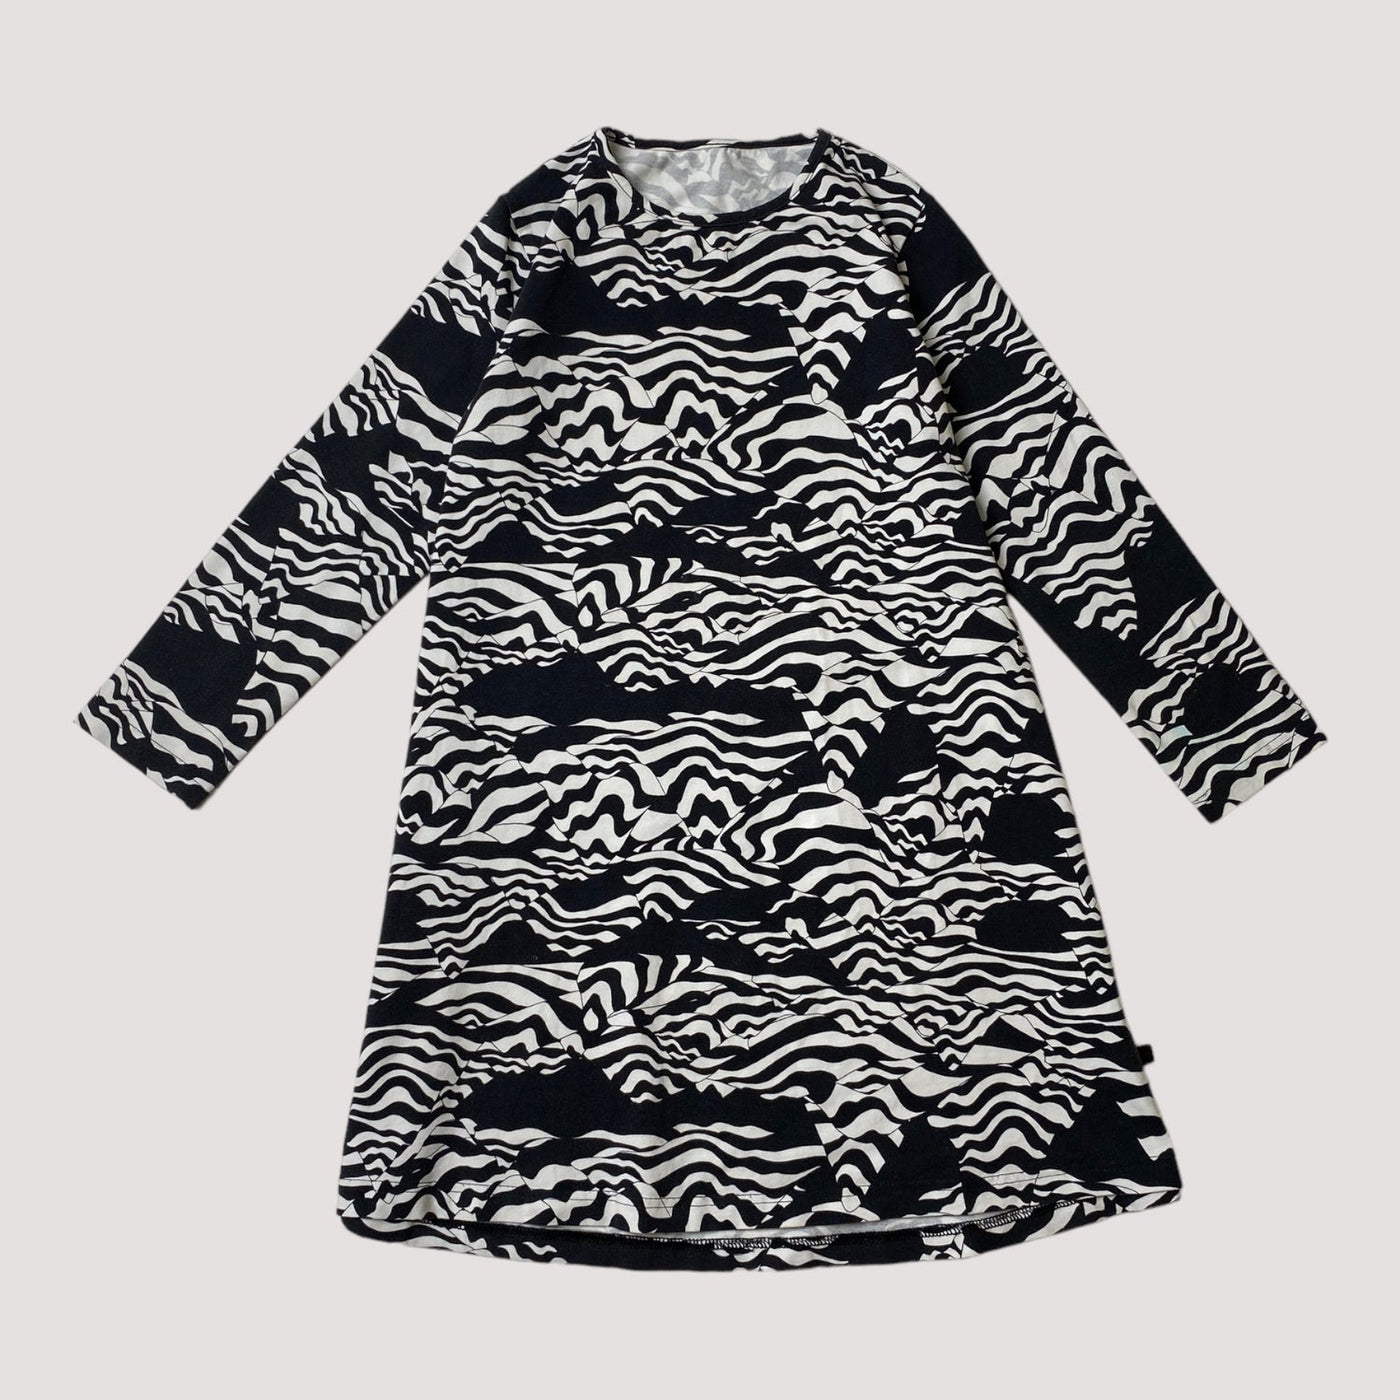 Vimma tunic dress, black/white | 130cm